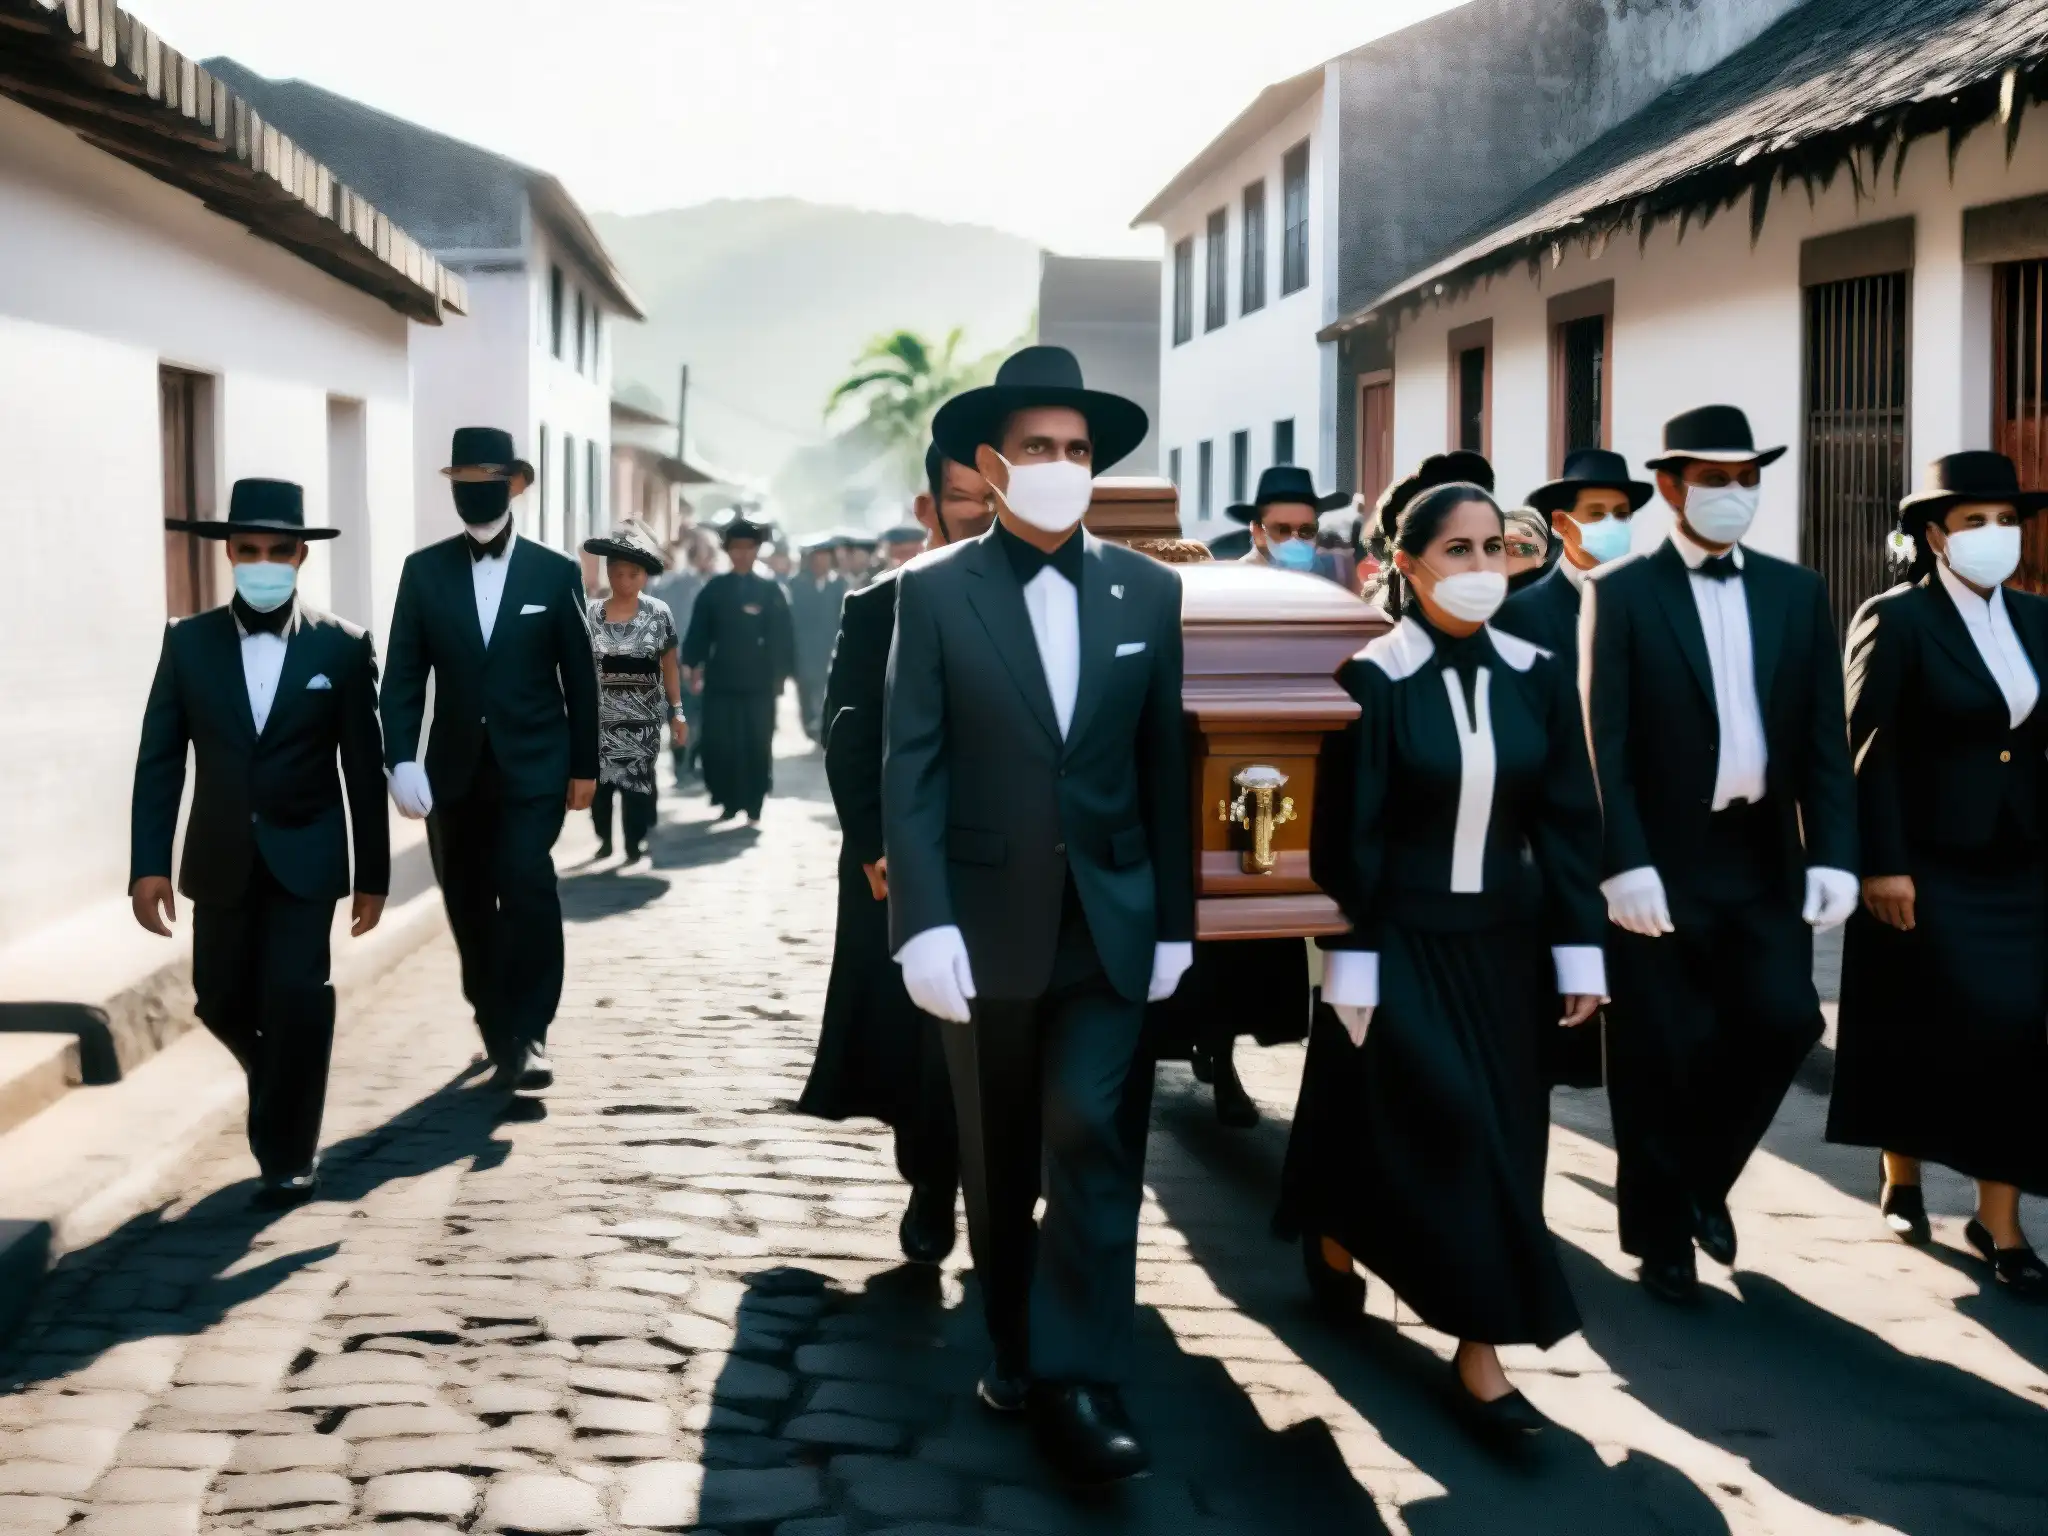 Un emotivo cortejo fúnebre en una aldea centroamericana, con vestimenta tradicional y un ornado ataúd